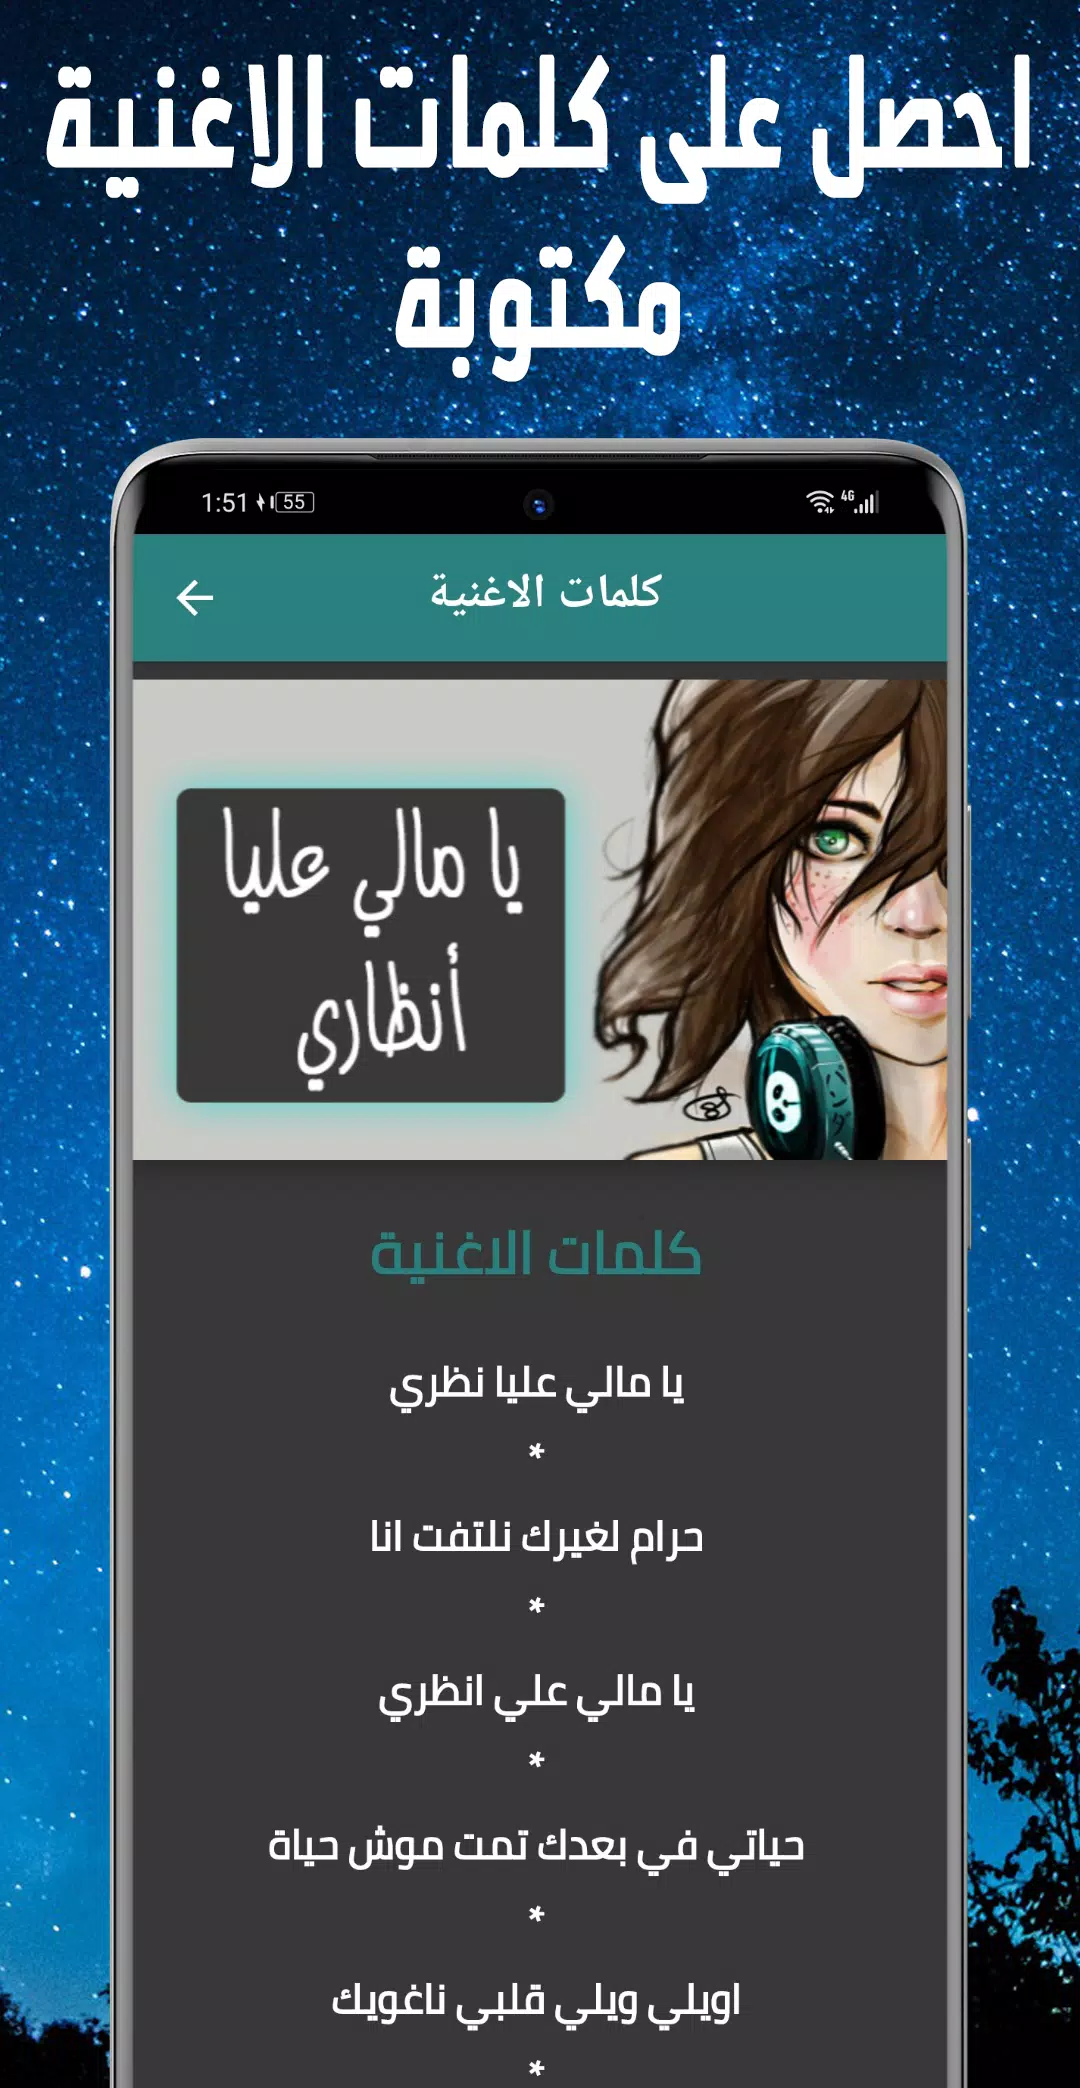 اغنية يا مالي عليا انظري Mp3 APK for Android Download